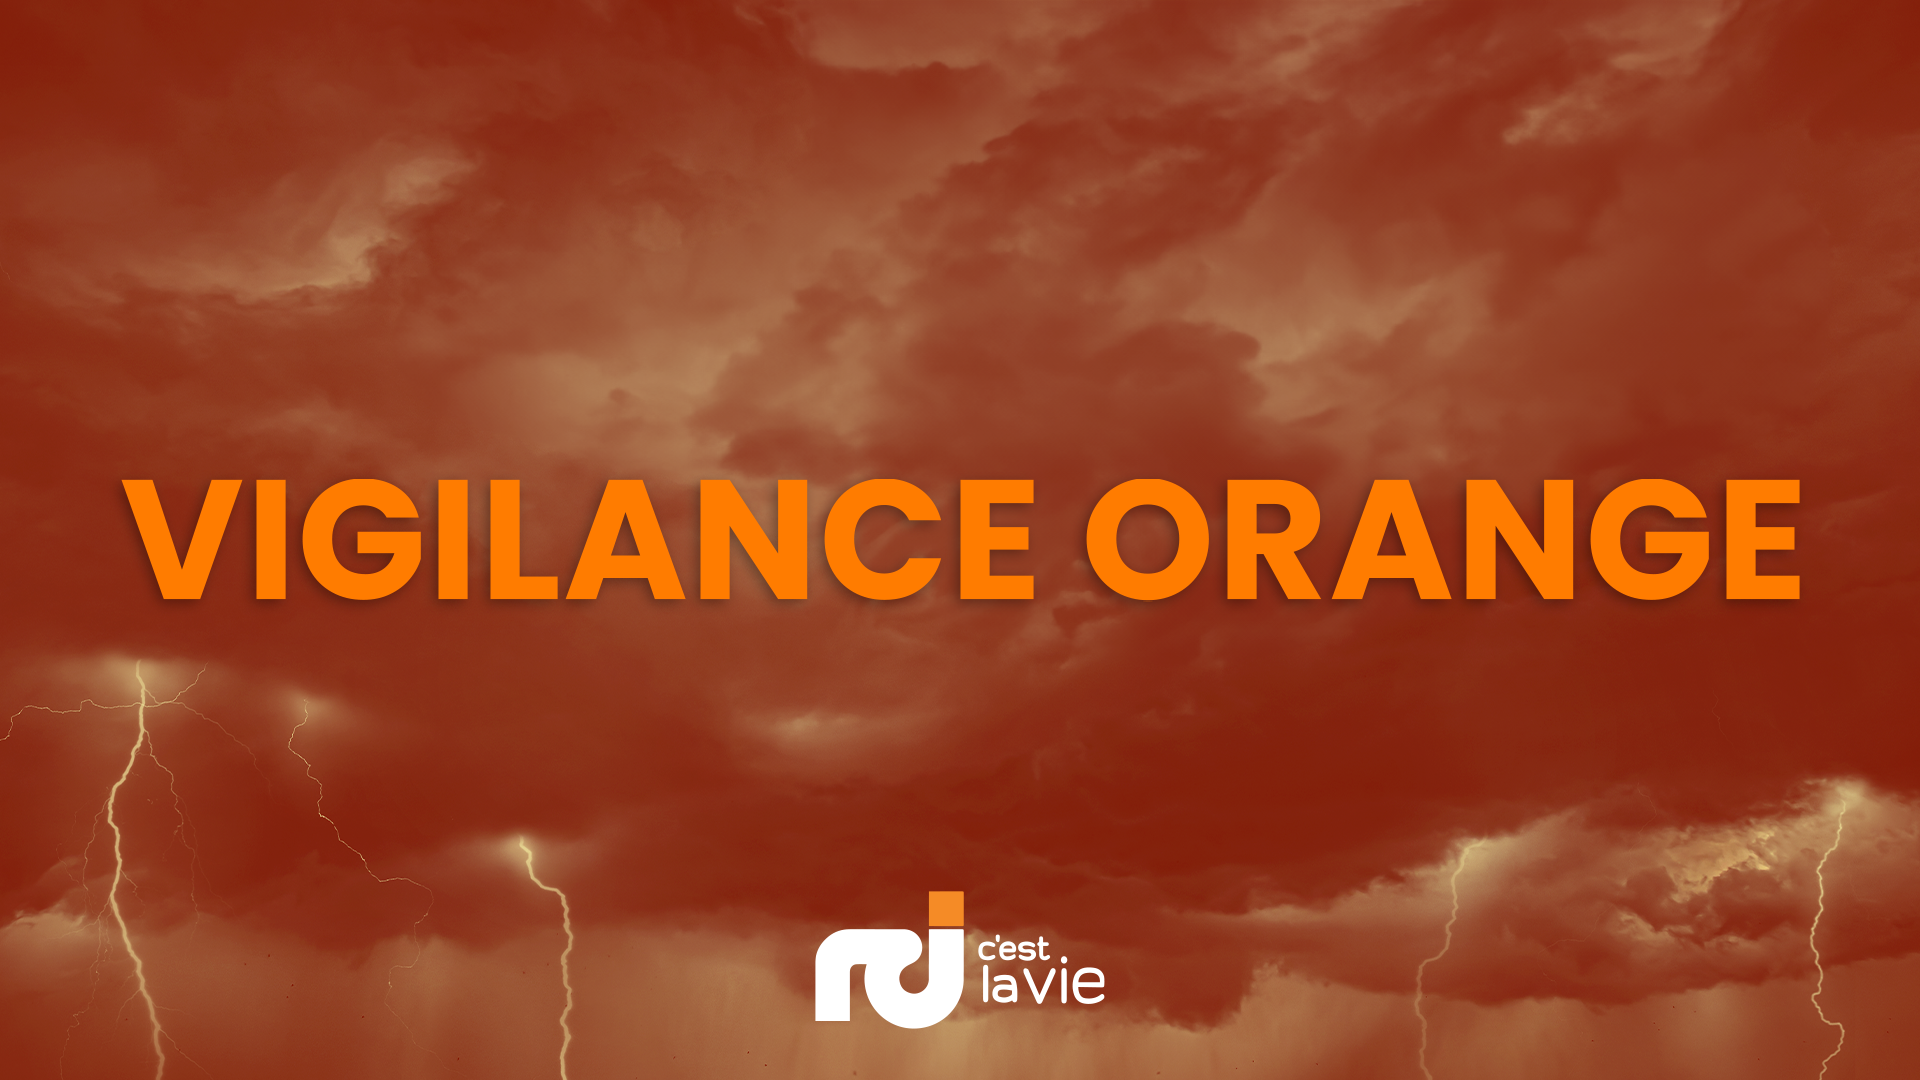     Vigilance Orange : trois choses à savoir

